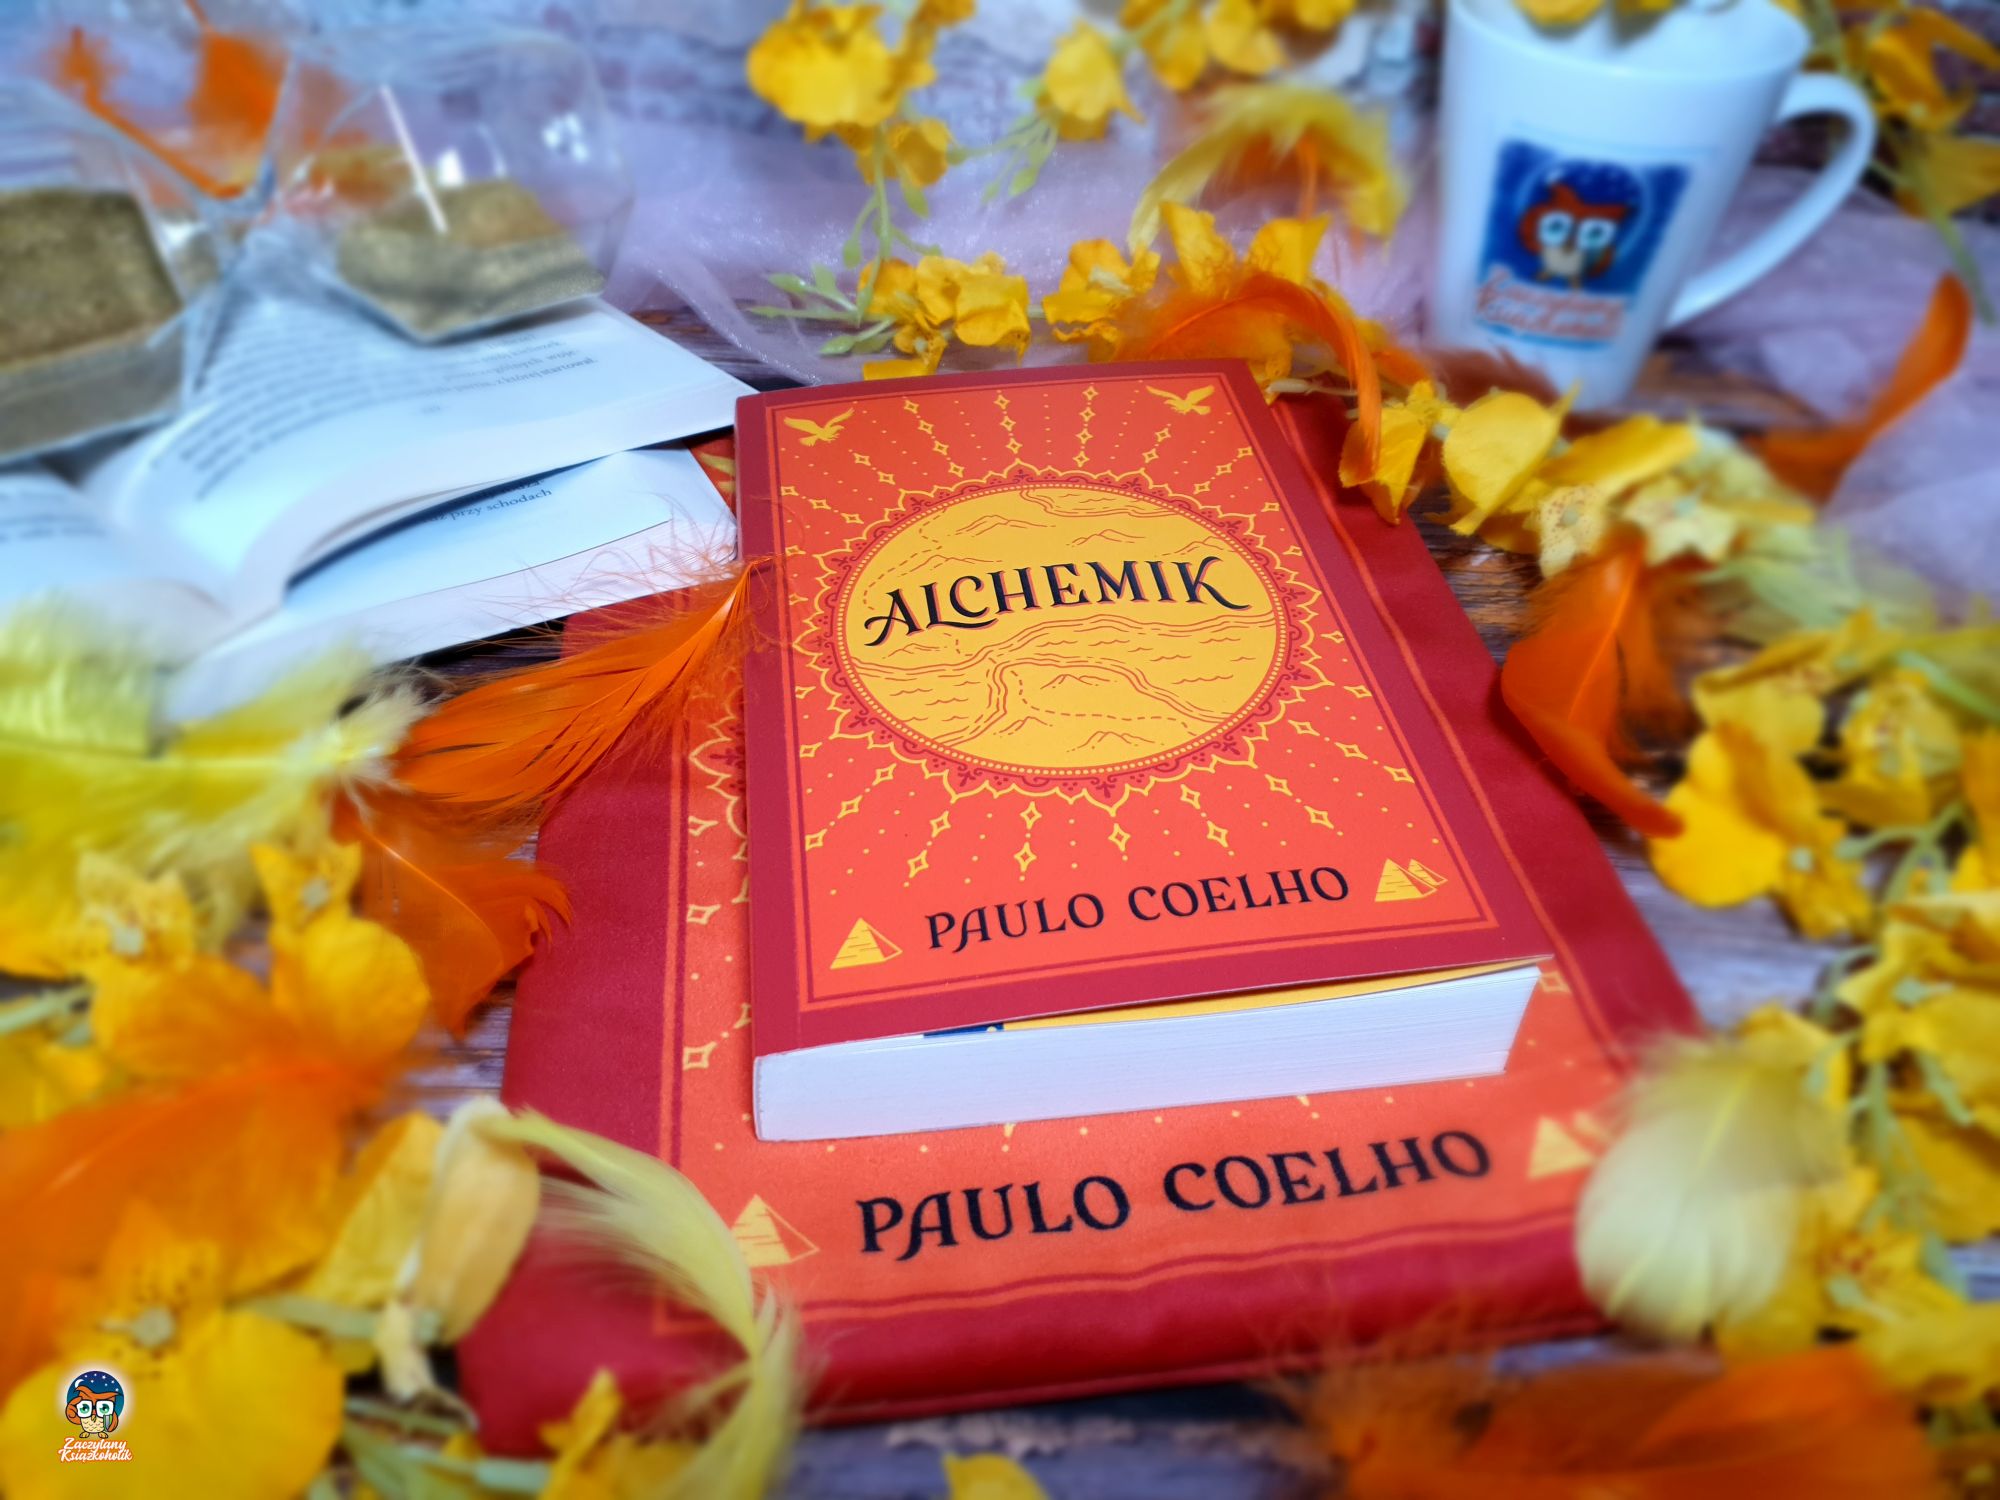 Blog książkowy - Każdy z nas ma swoje unikalne przeznaczenie - Alchemik - Paulo Coelho - zaczytanyksiazkoholik.pl